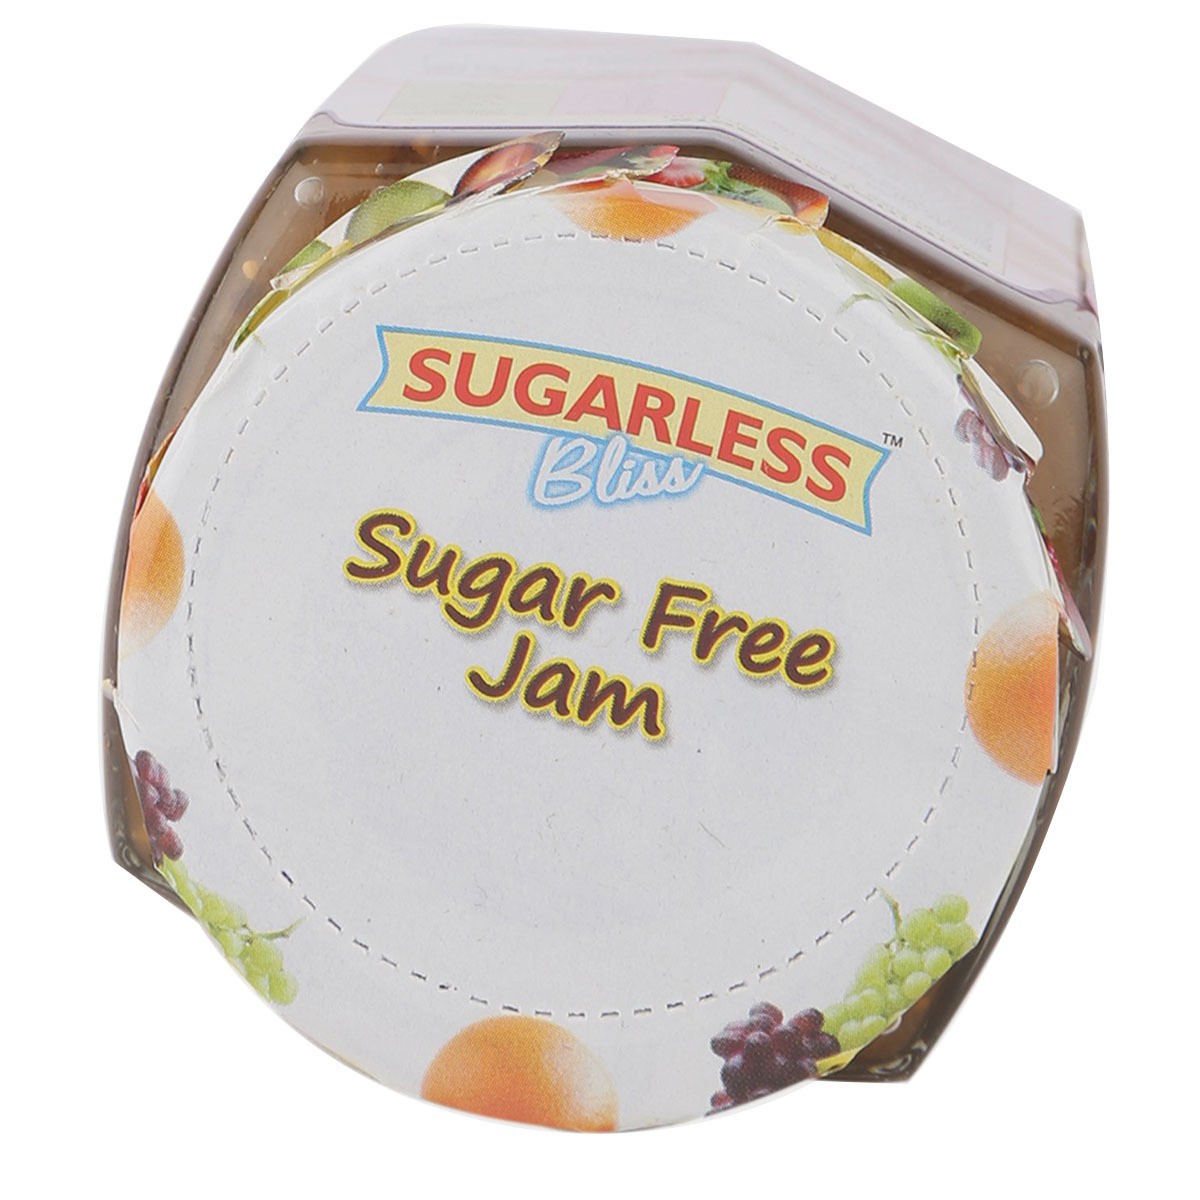 Sugarless Kala Jamun 300g